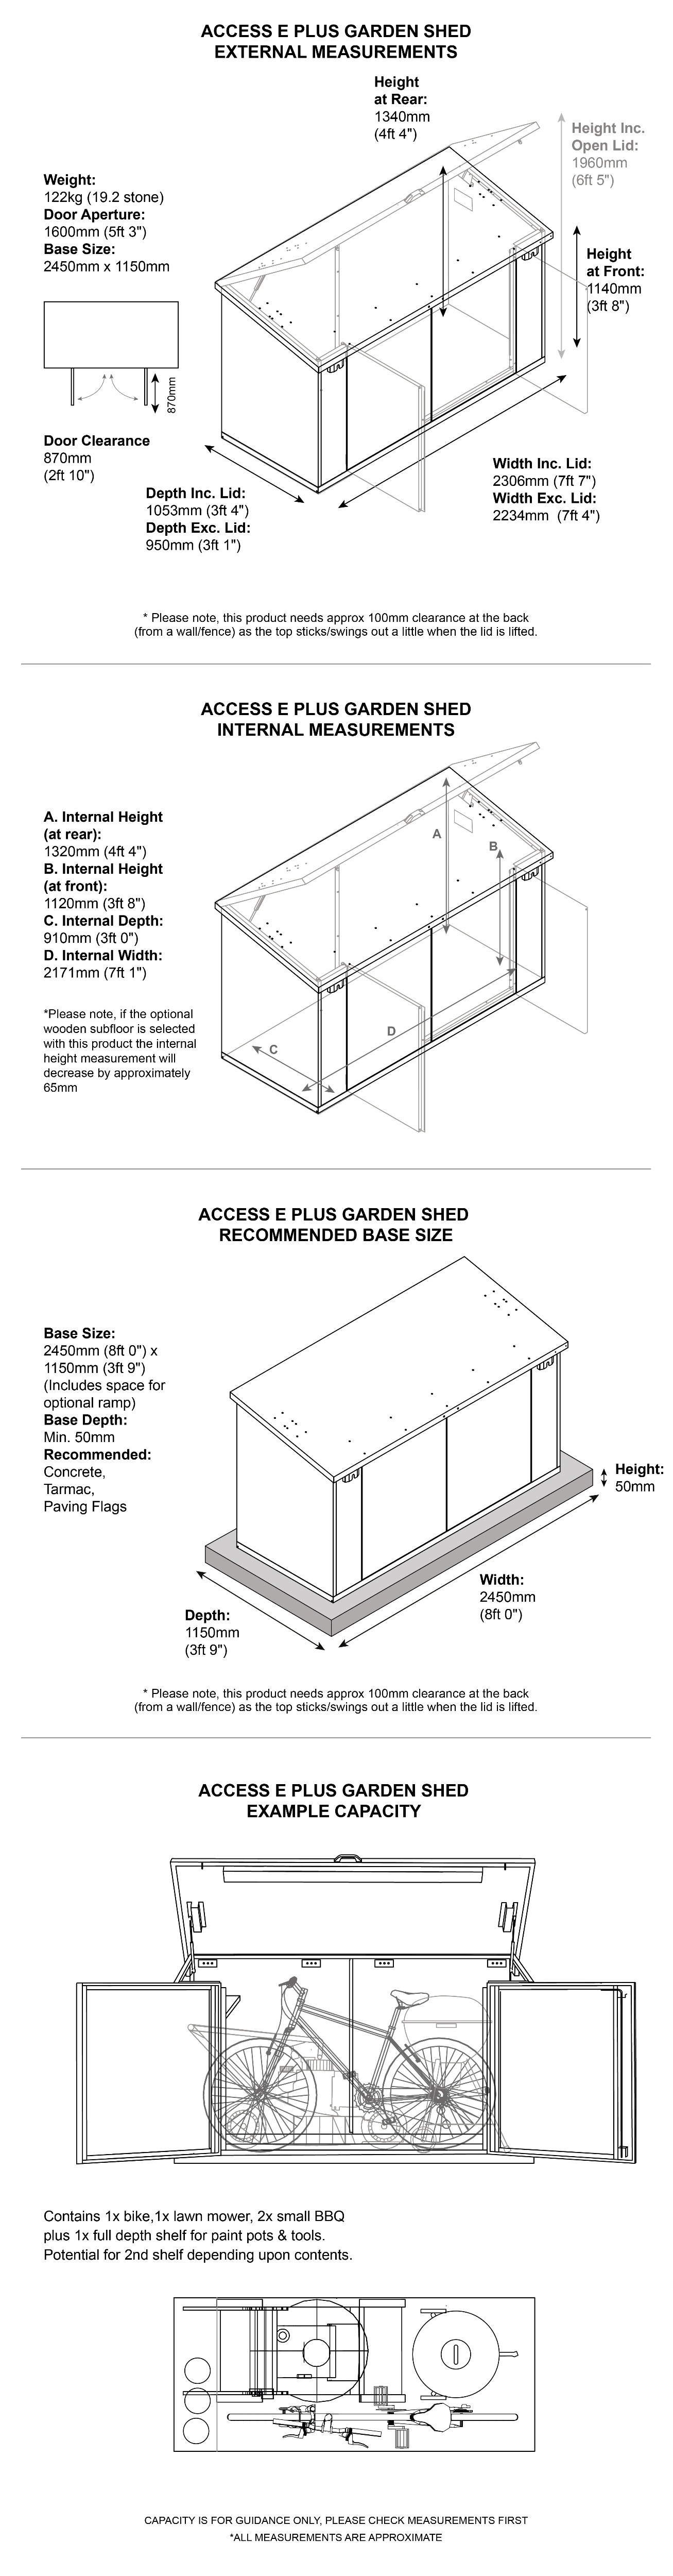 Access E Plus Garden Dimensions